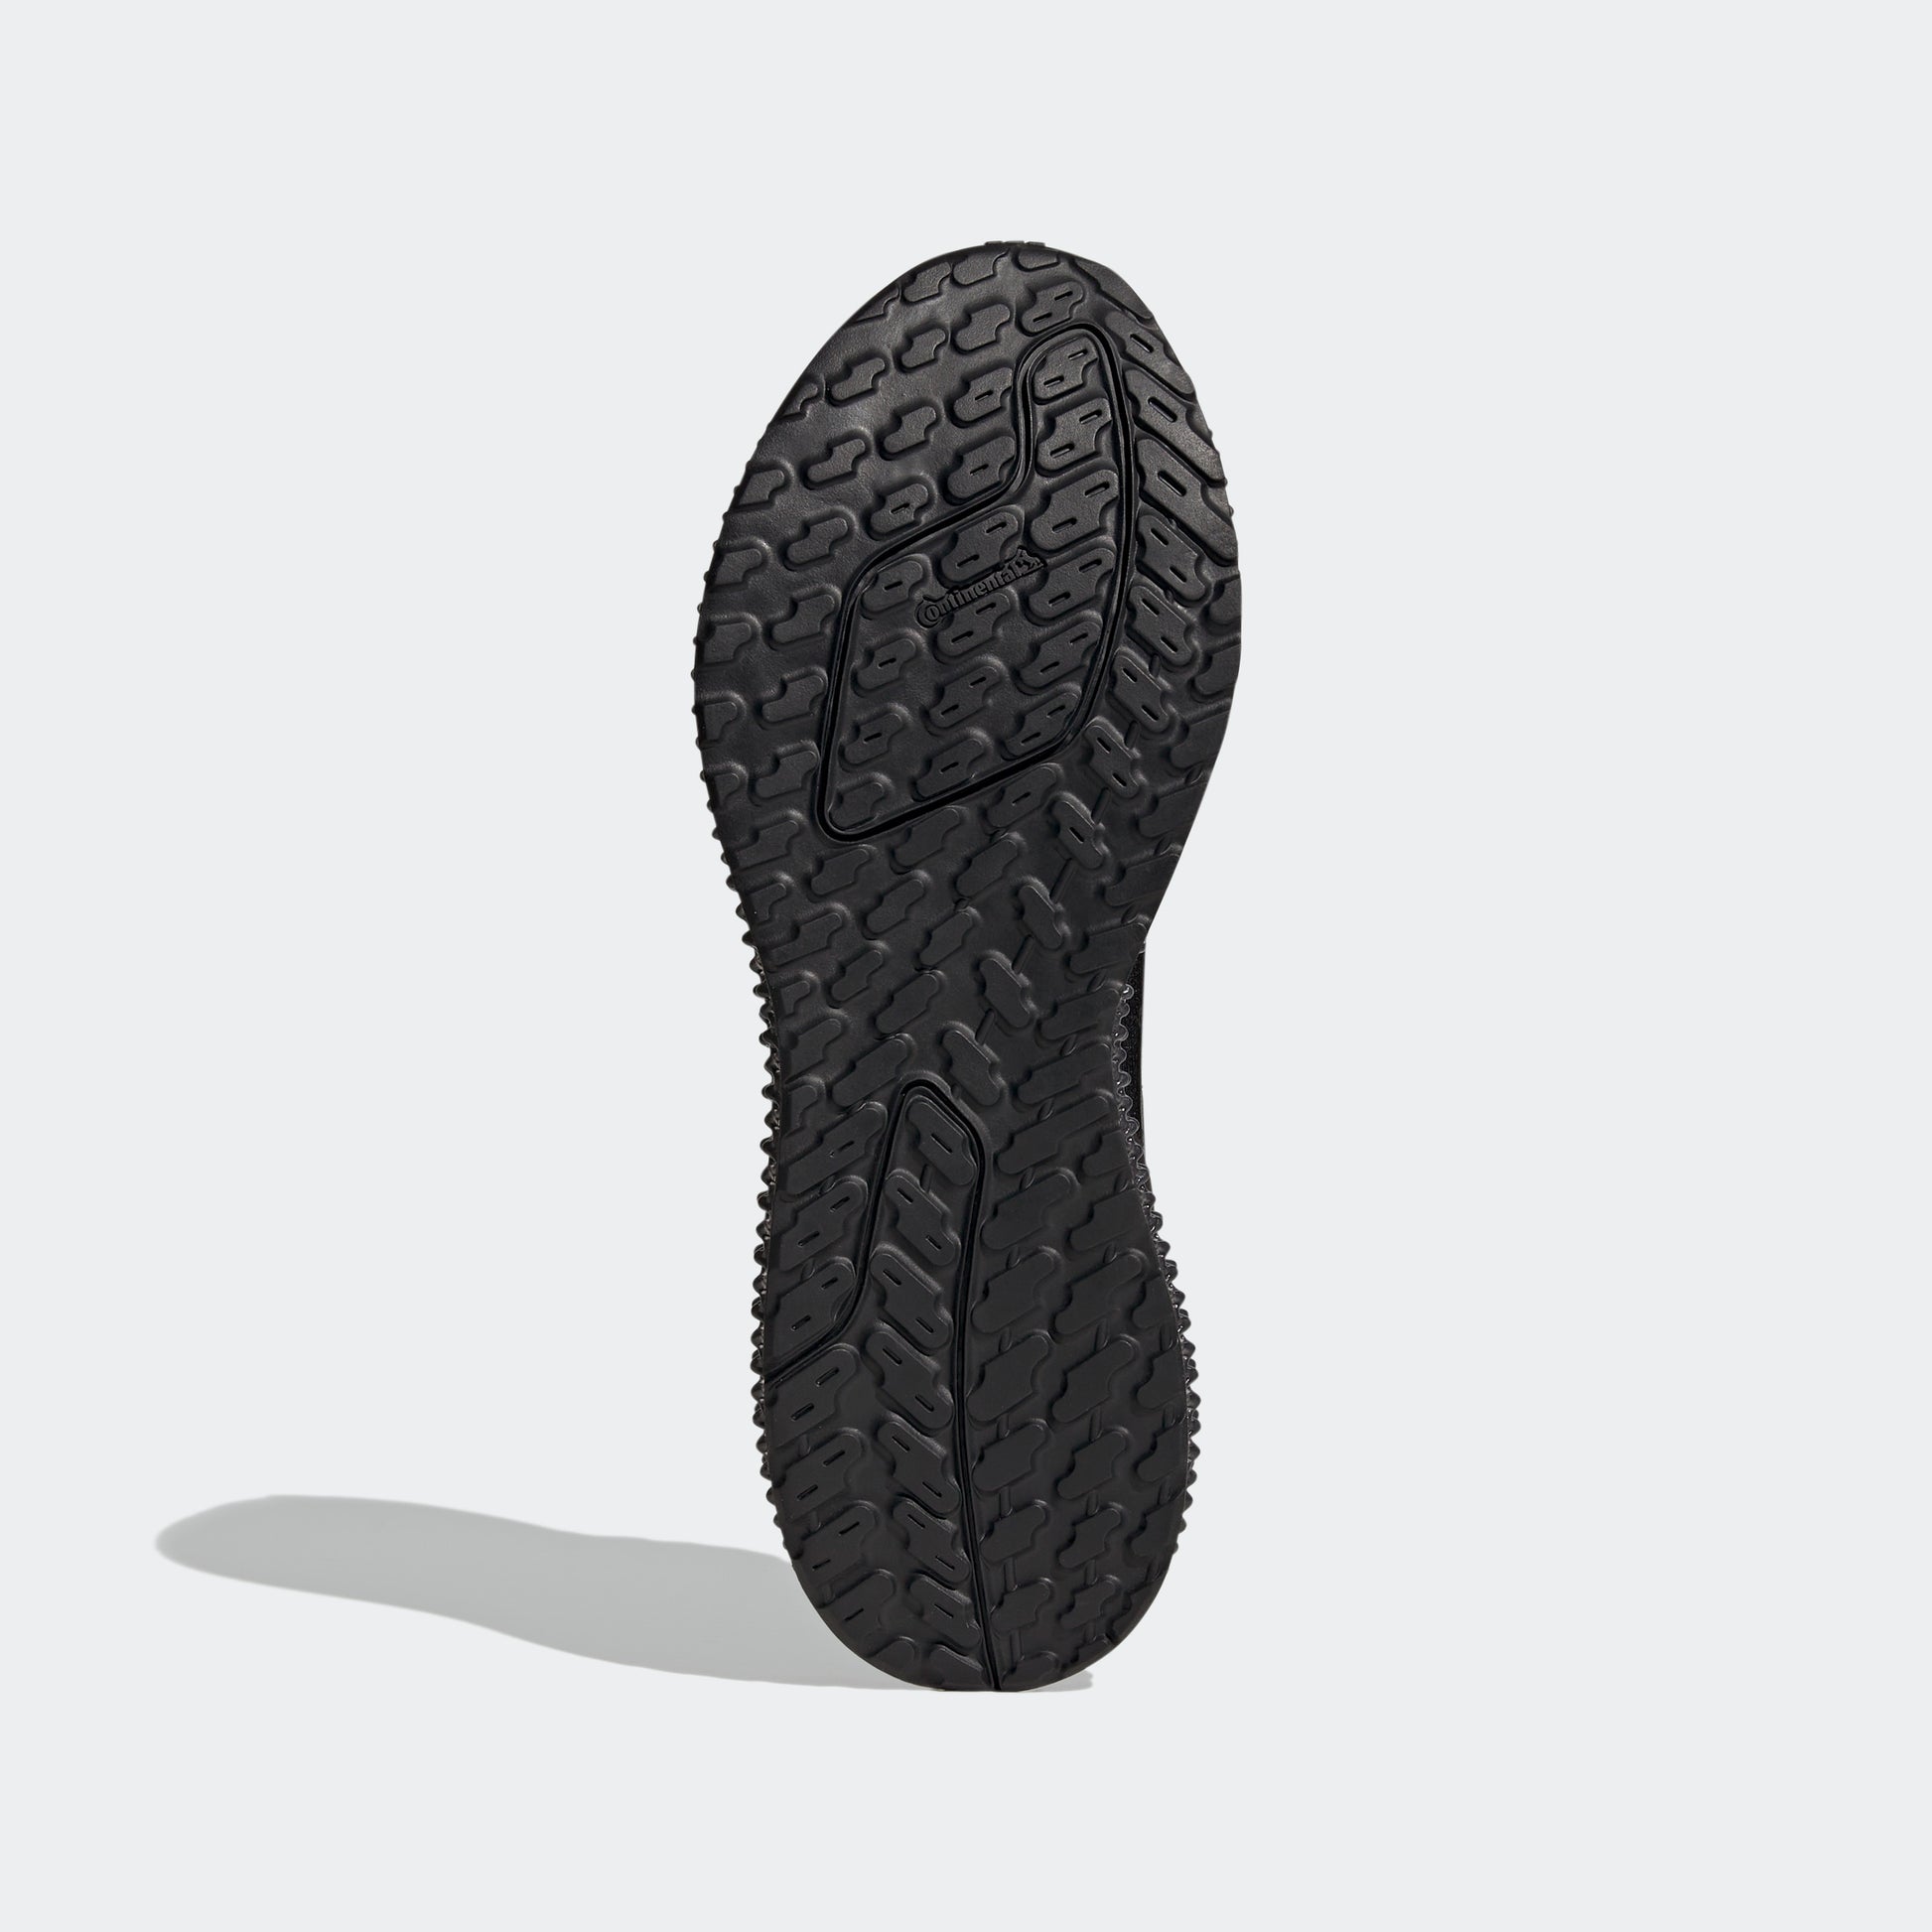 נעלי ספורט ULTRA 4DFWD בצבע שחור